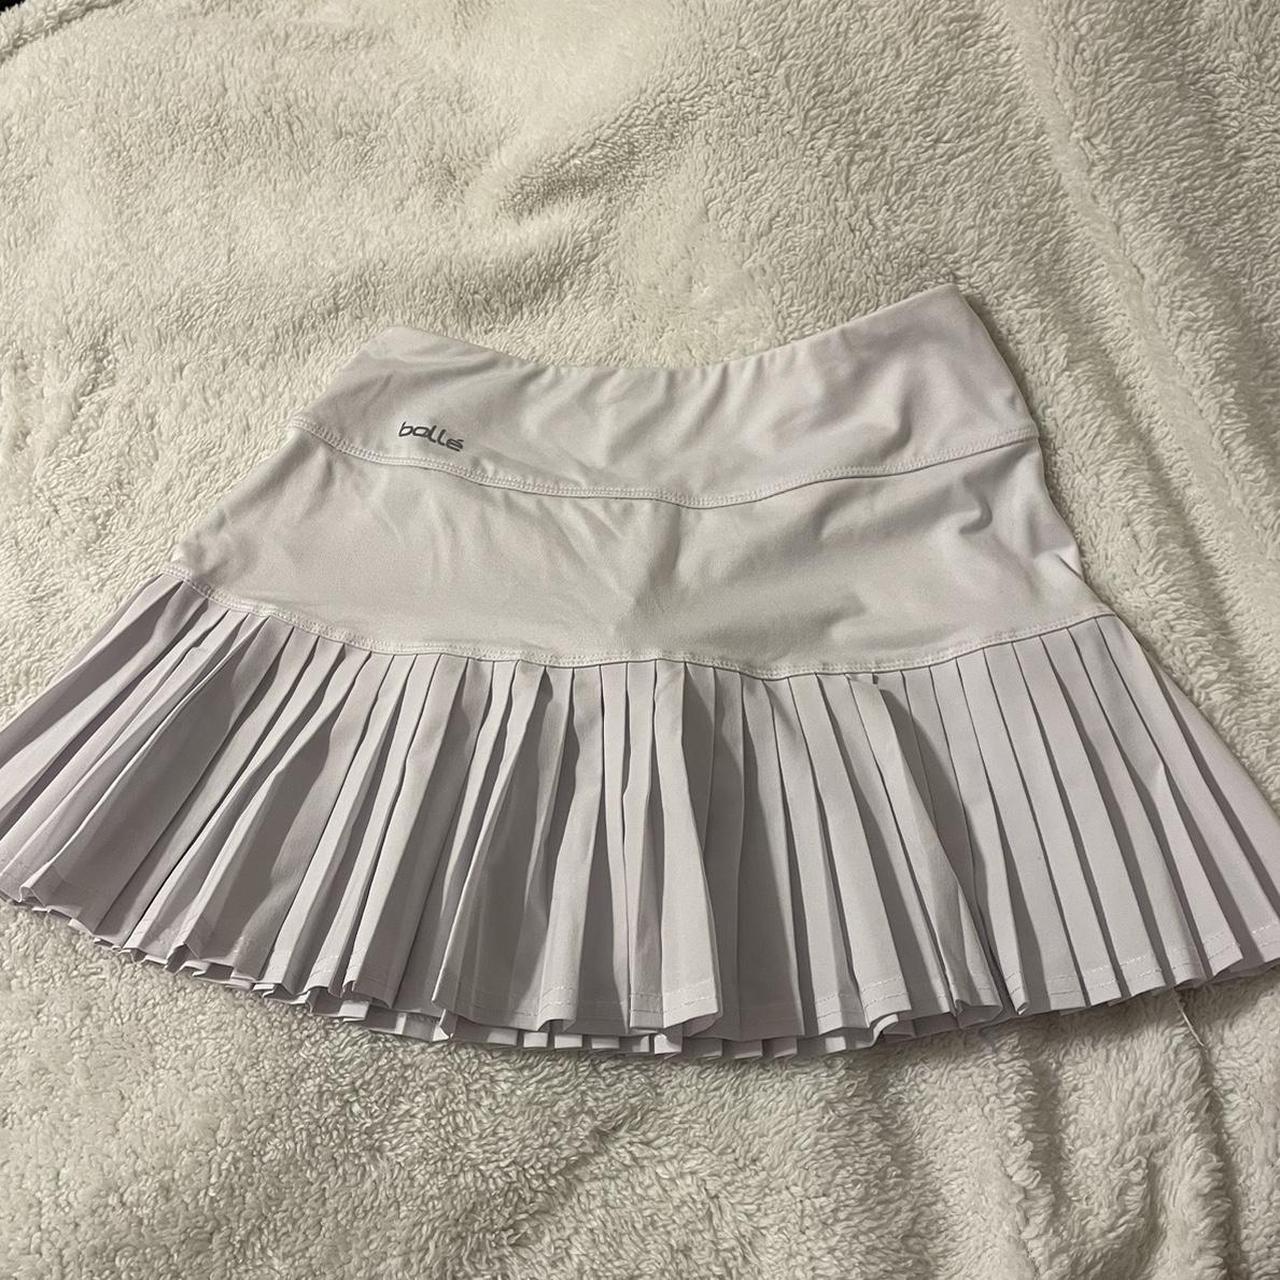 Bollé Women's White Skirt